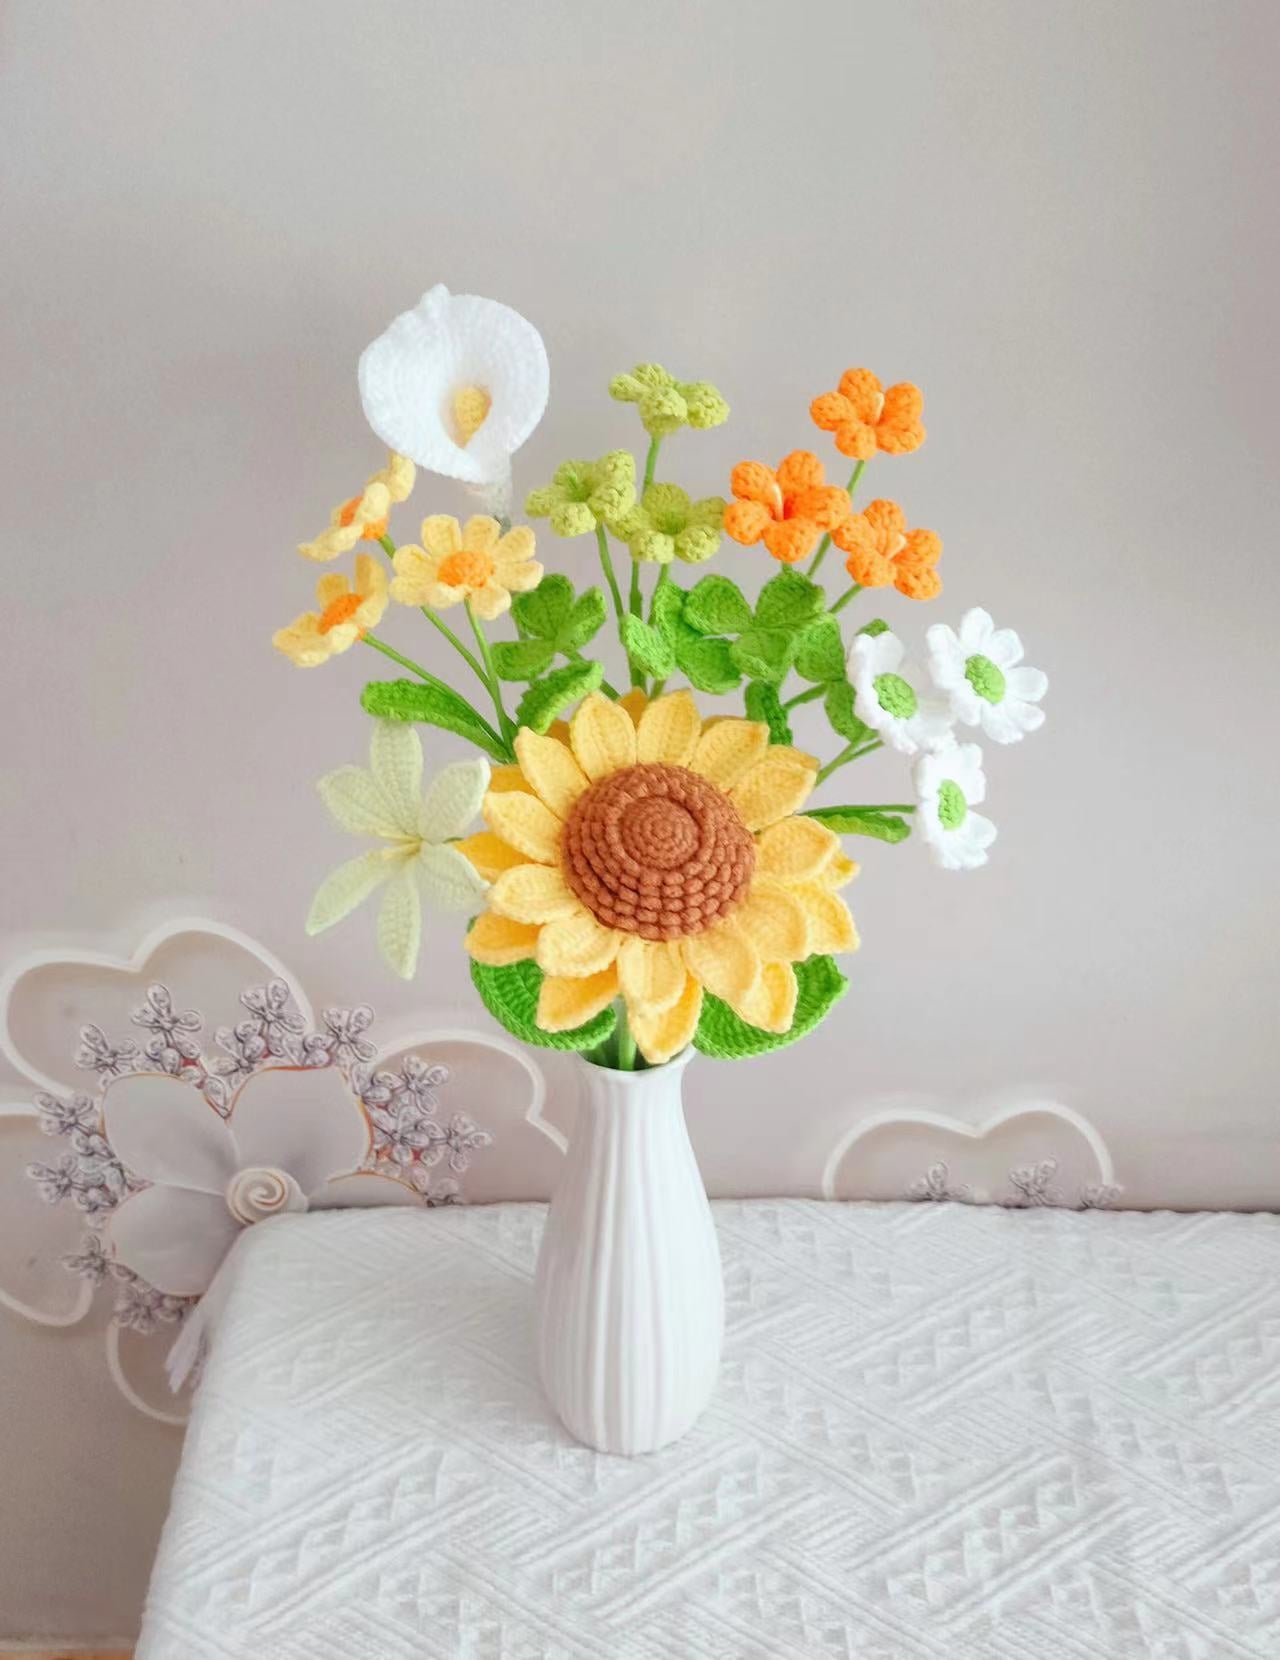 Personalized Crochet Floral Arrangements